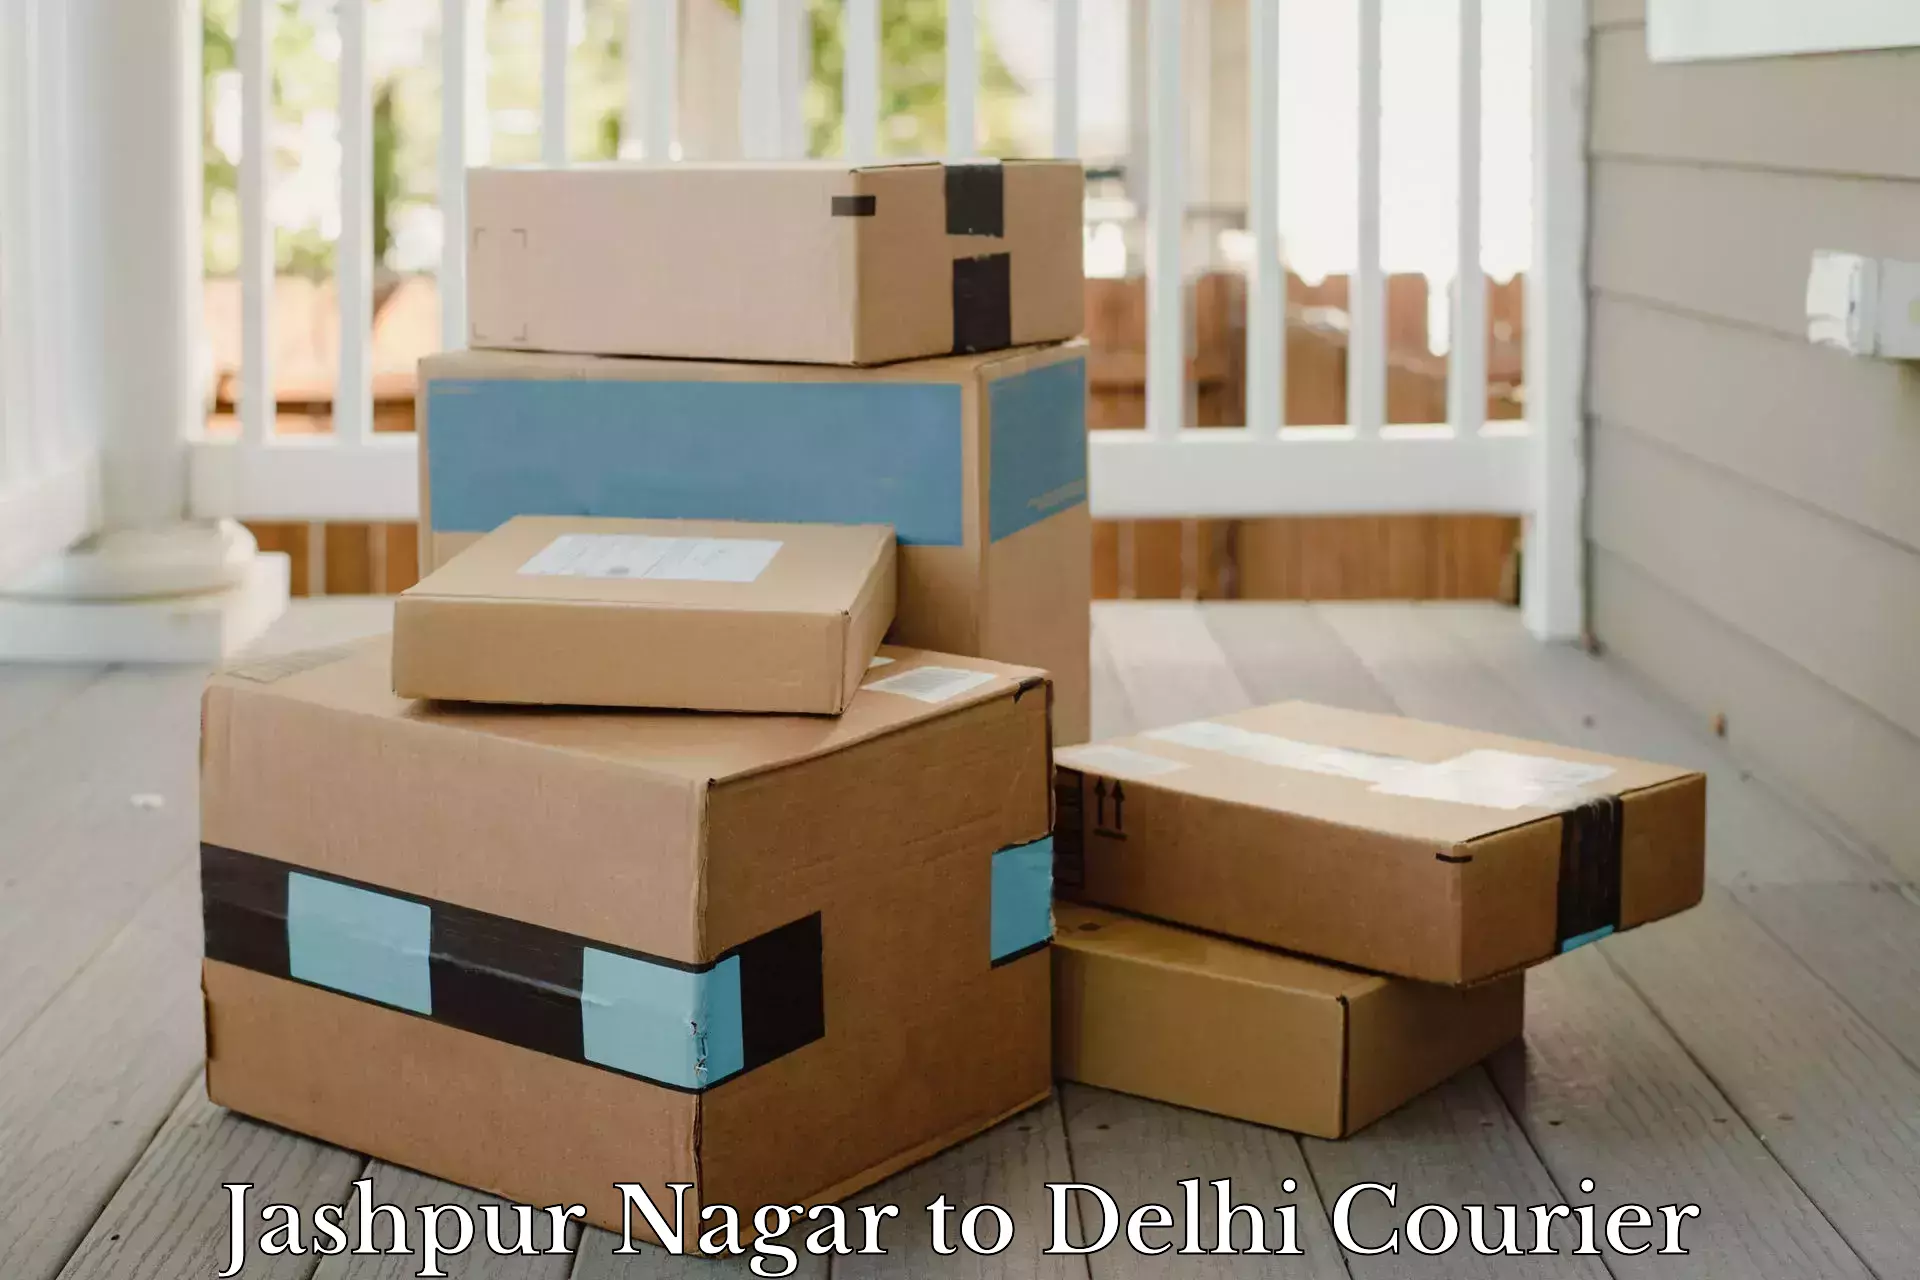 Speedy delivery service Jashpur Nagar to Ramesh Nagar